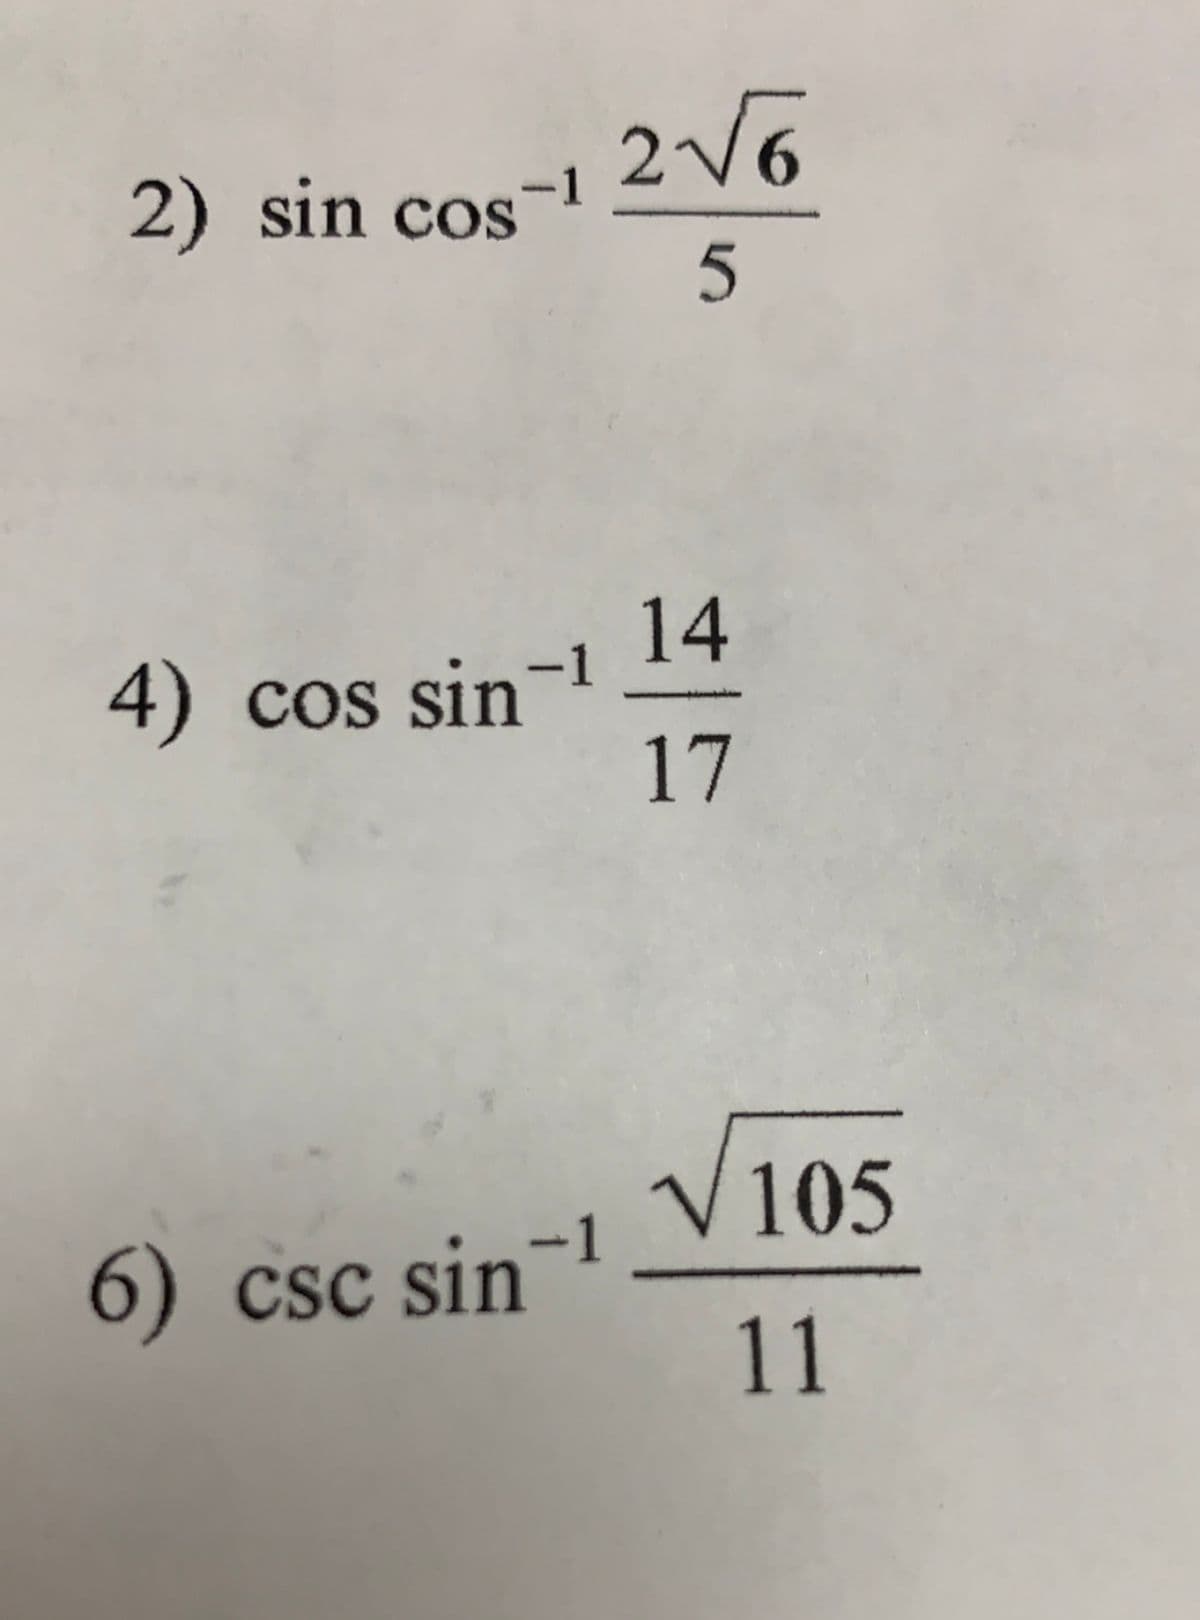 2) sin cos-
14
4) cos sin
17
-1
V105
6)
Csc sin-1
11
